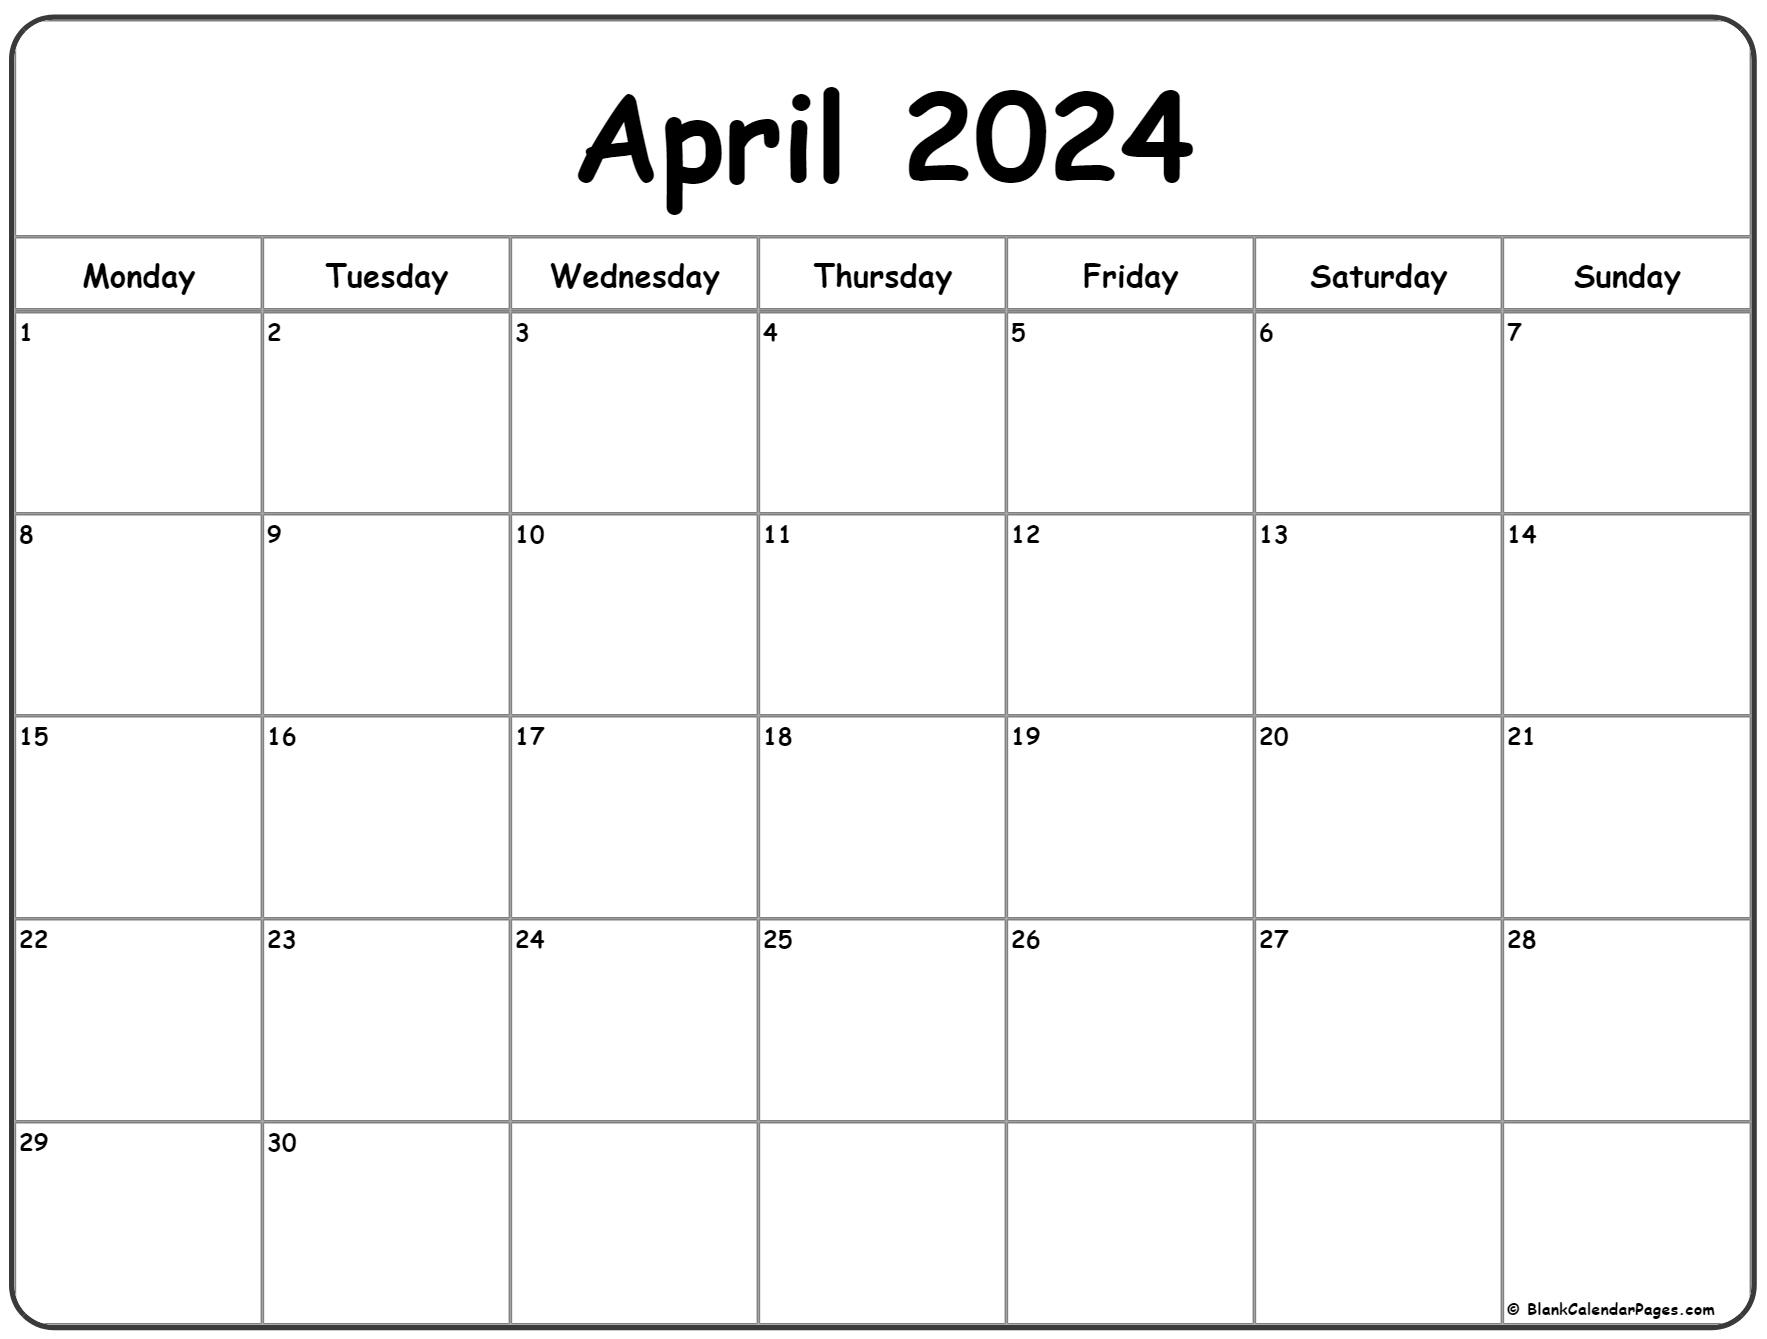 April 2024 Monday Calendar | Monday To Sunday for 2024 Calendar April Printable